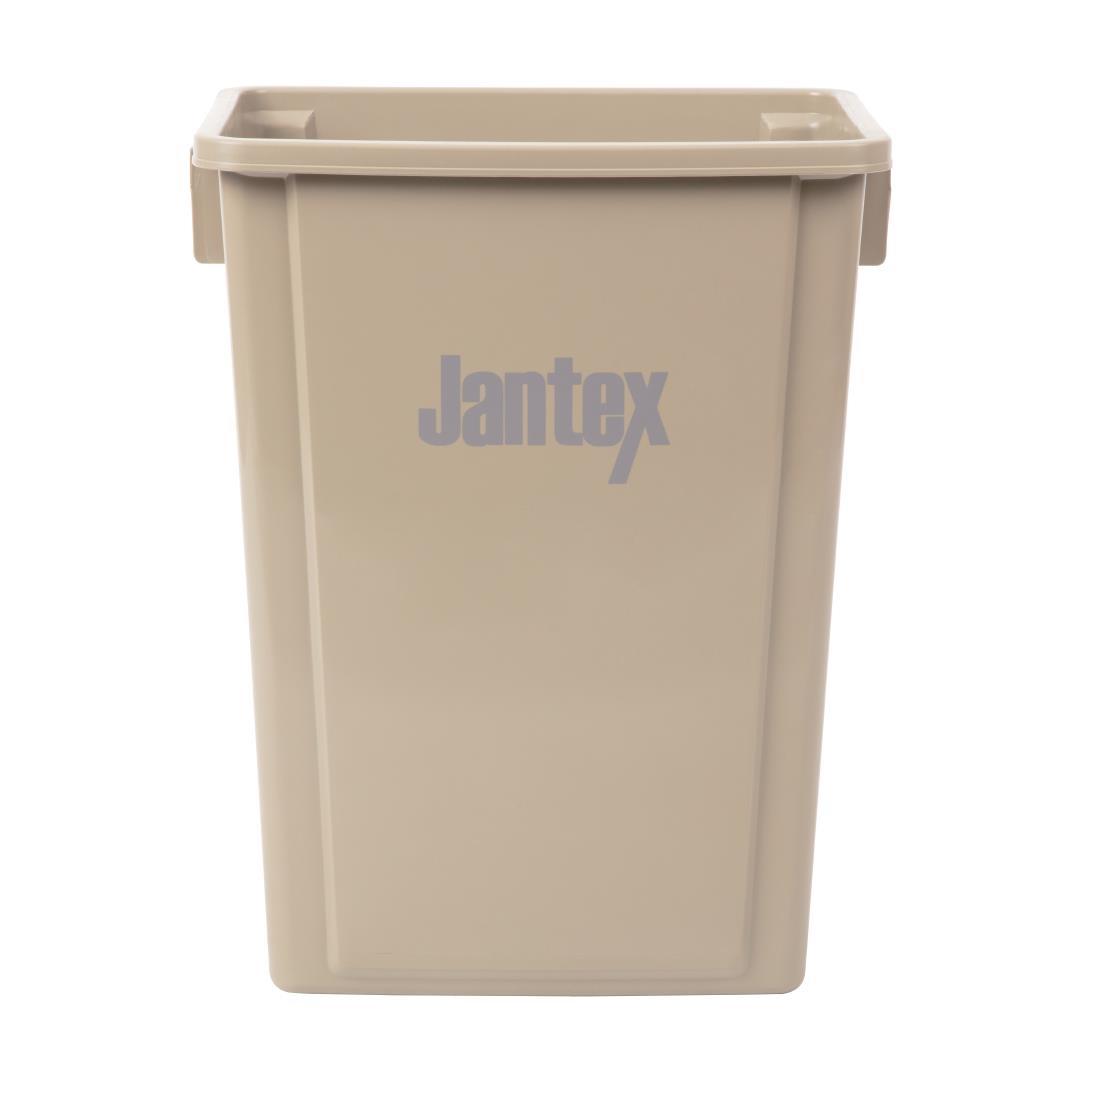 Jantex Recycling Bin Beige 56Ltr - CK960  - 1